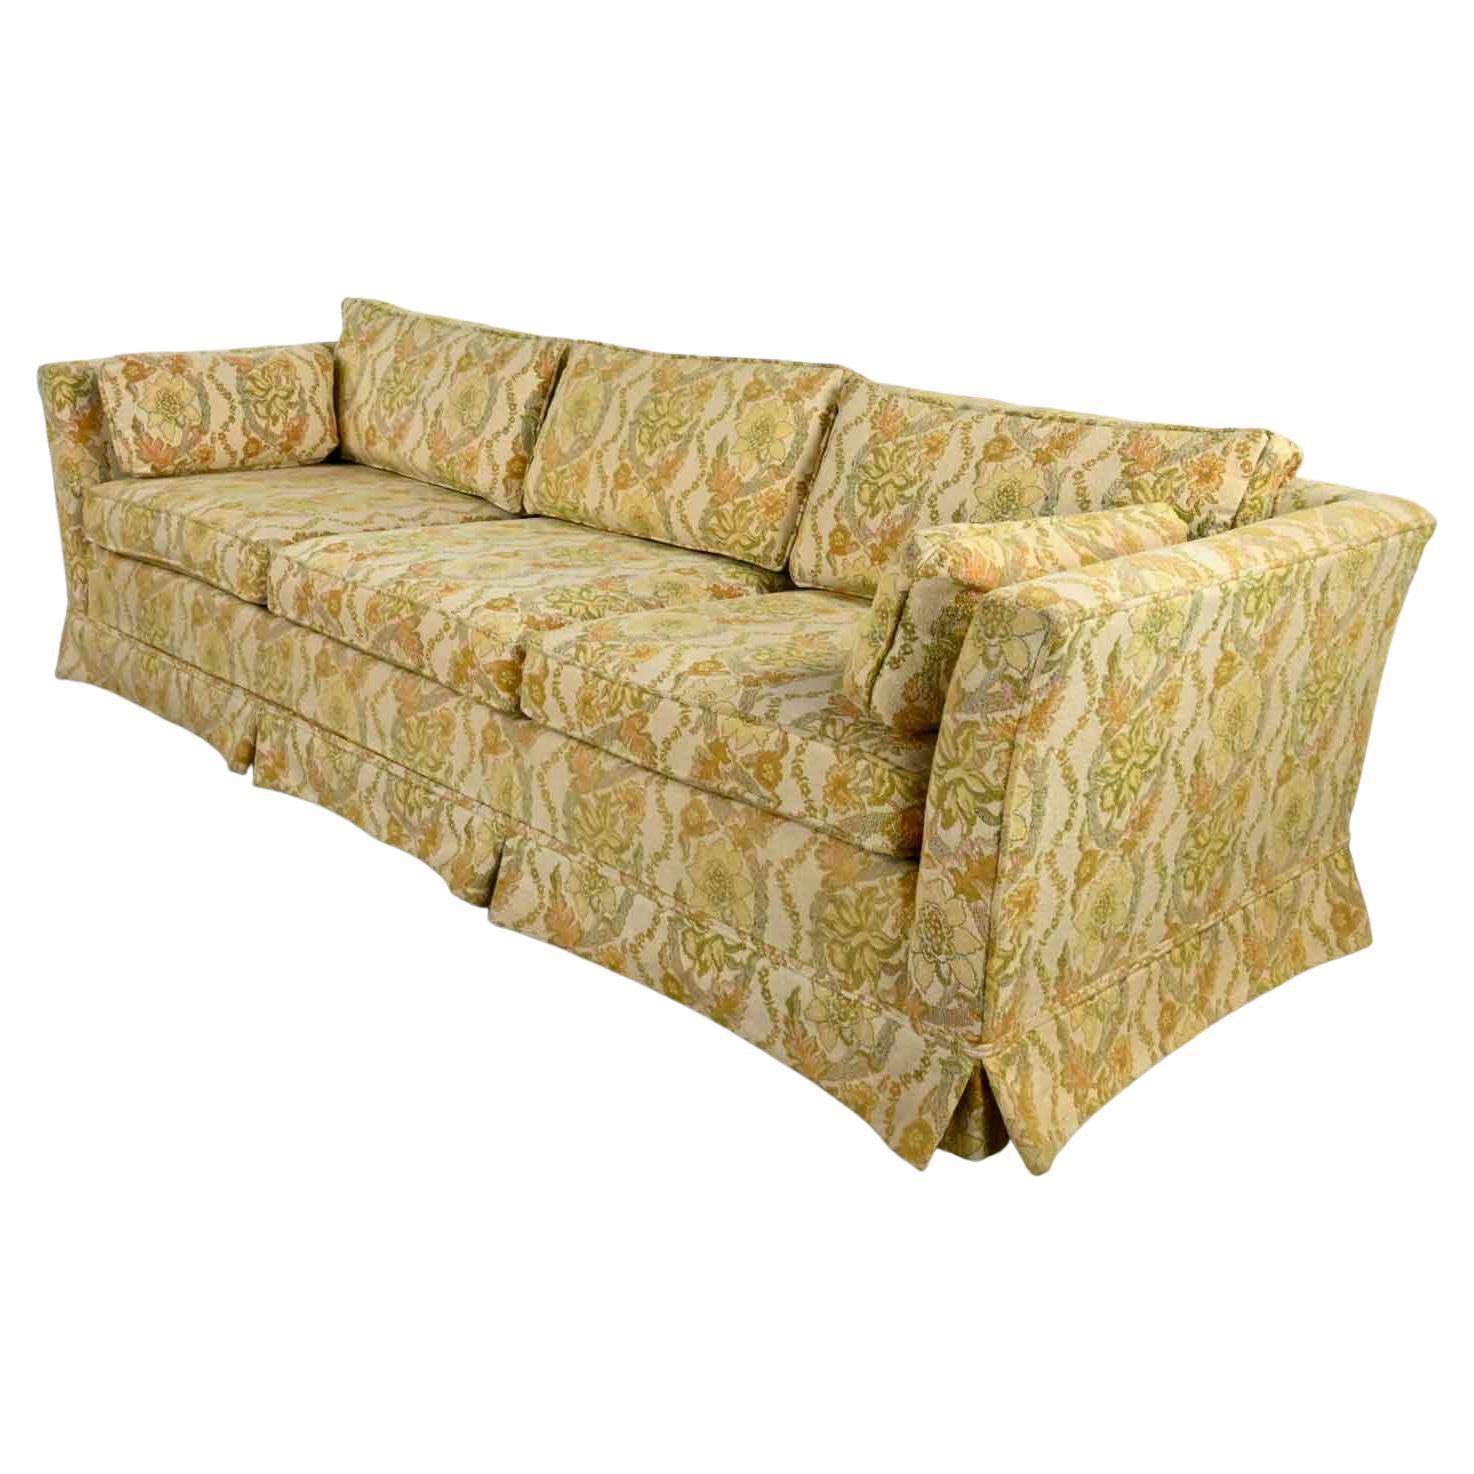 Canapé de smoking évasé en fourrure Broyhill MCM avec tissu floral jaune Lt Lenoir Chair Co.